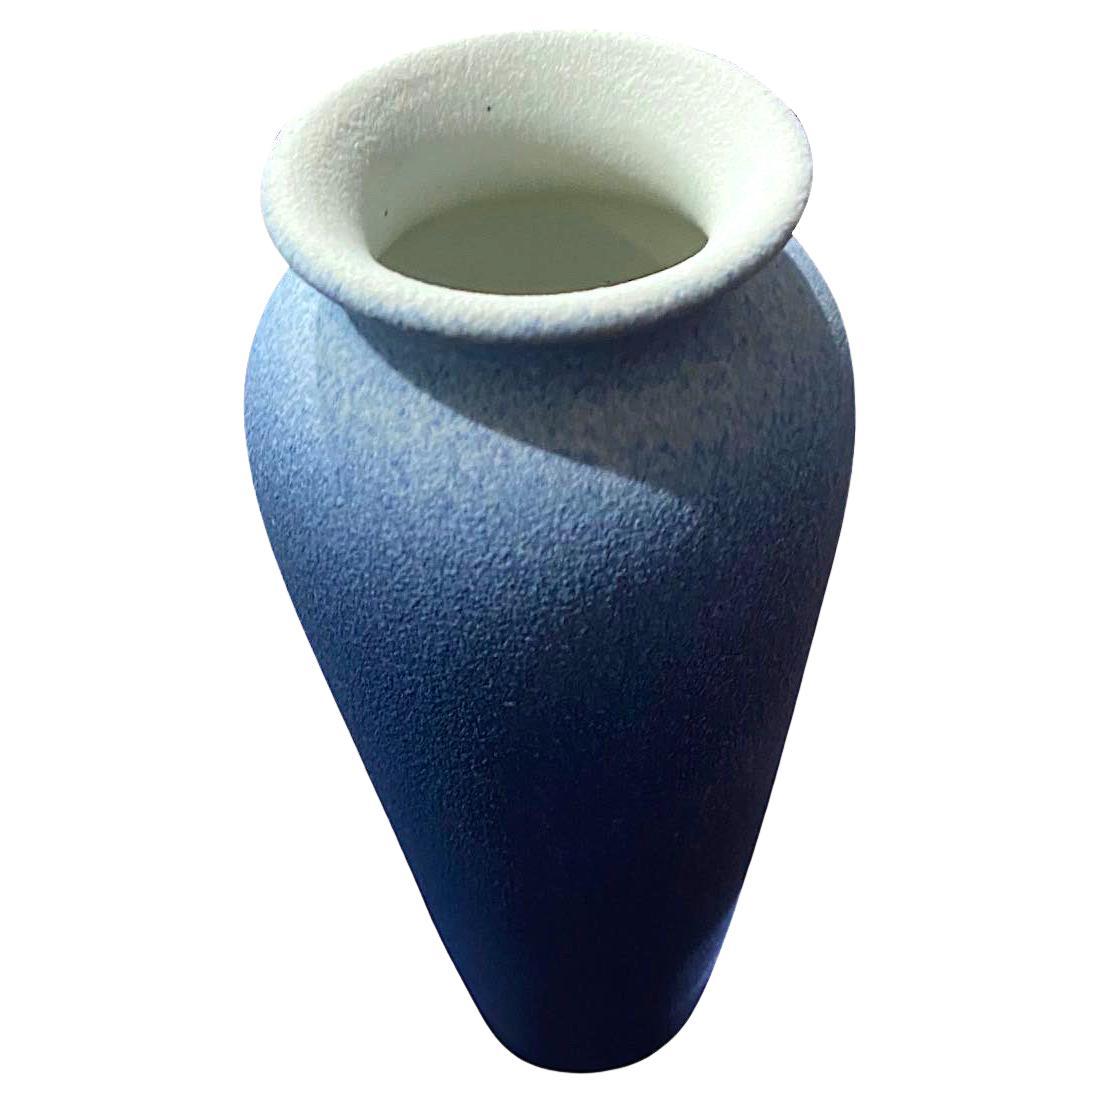 Zeitgenössische chinesische ombre blau glasierte Vase.
Hoher, abgerundeter Deckel mit breiter Ausgussöffnung.
Teil einer großen Sammlung.